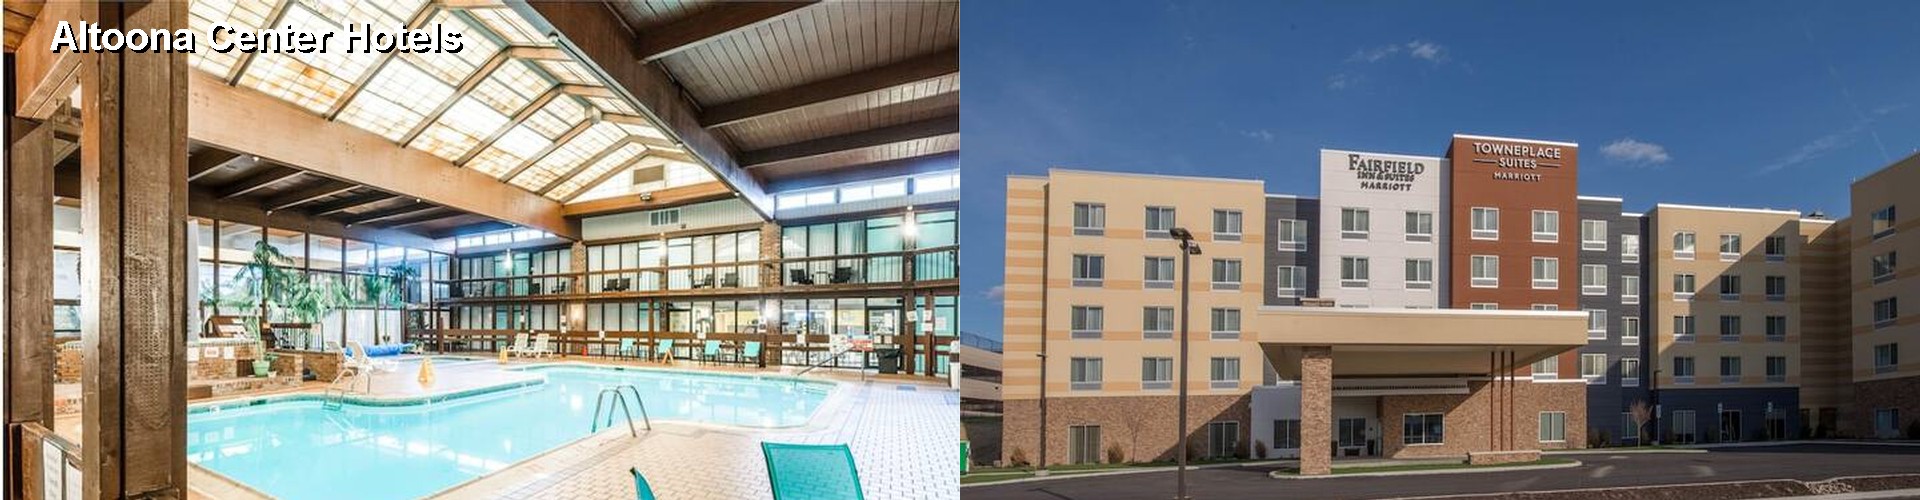 5 Best Hotels near Altoona Center